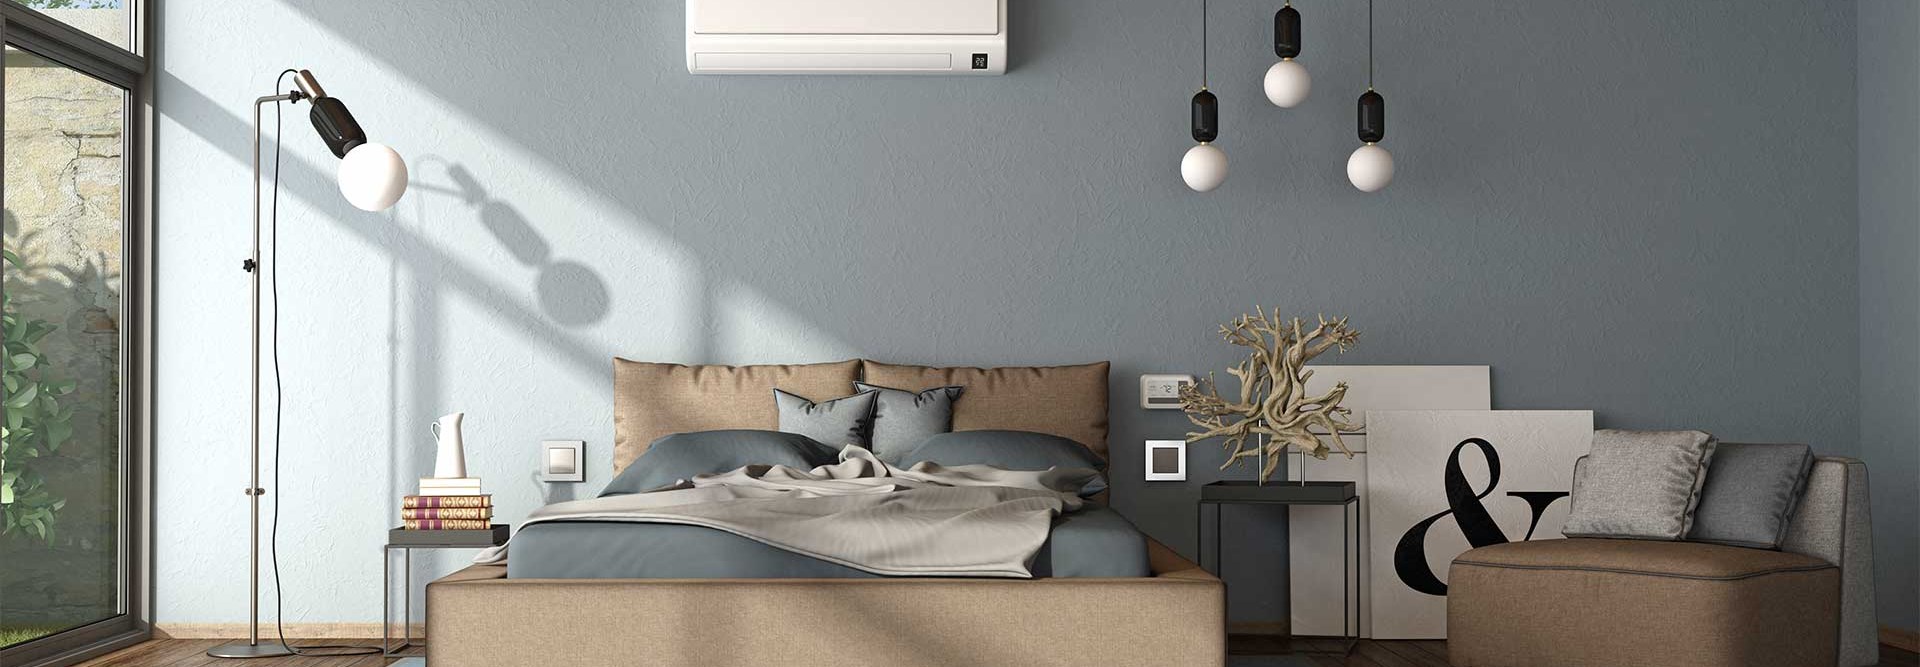 Como escolher o melhor ar condicionado? 